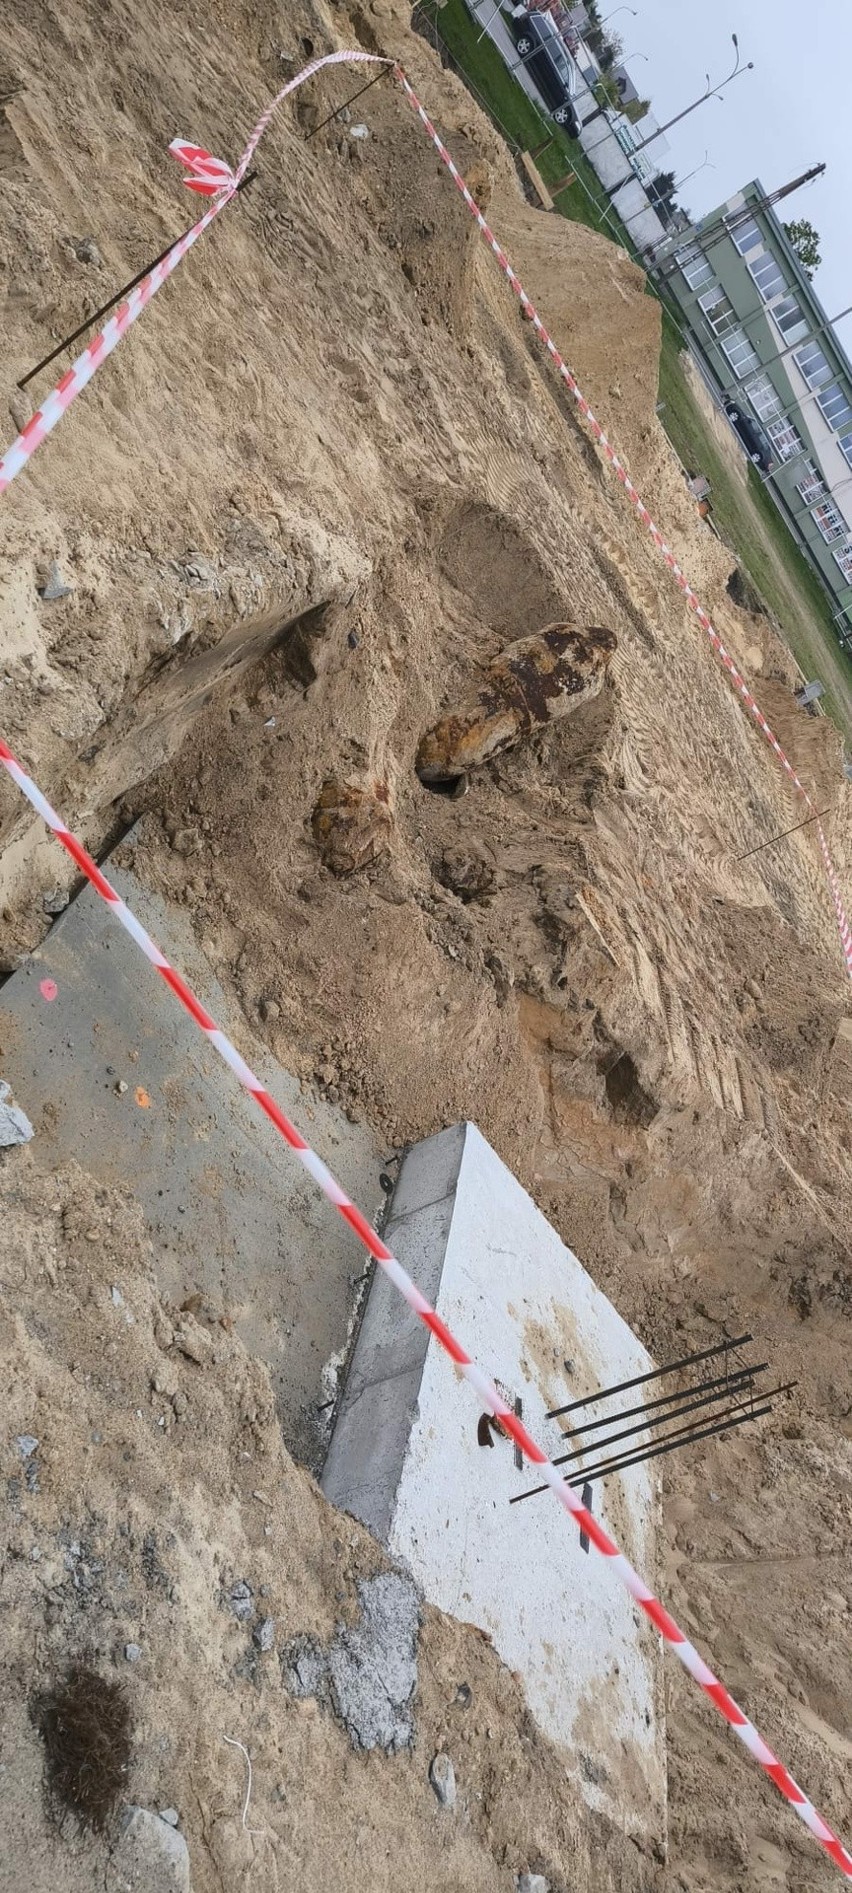 4 bomby lotnicze znalezione w Białej Podlaskiej. Trwa ewakuacja mieszkańców